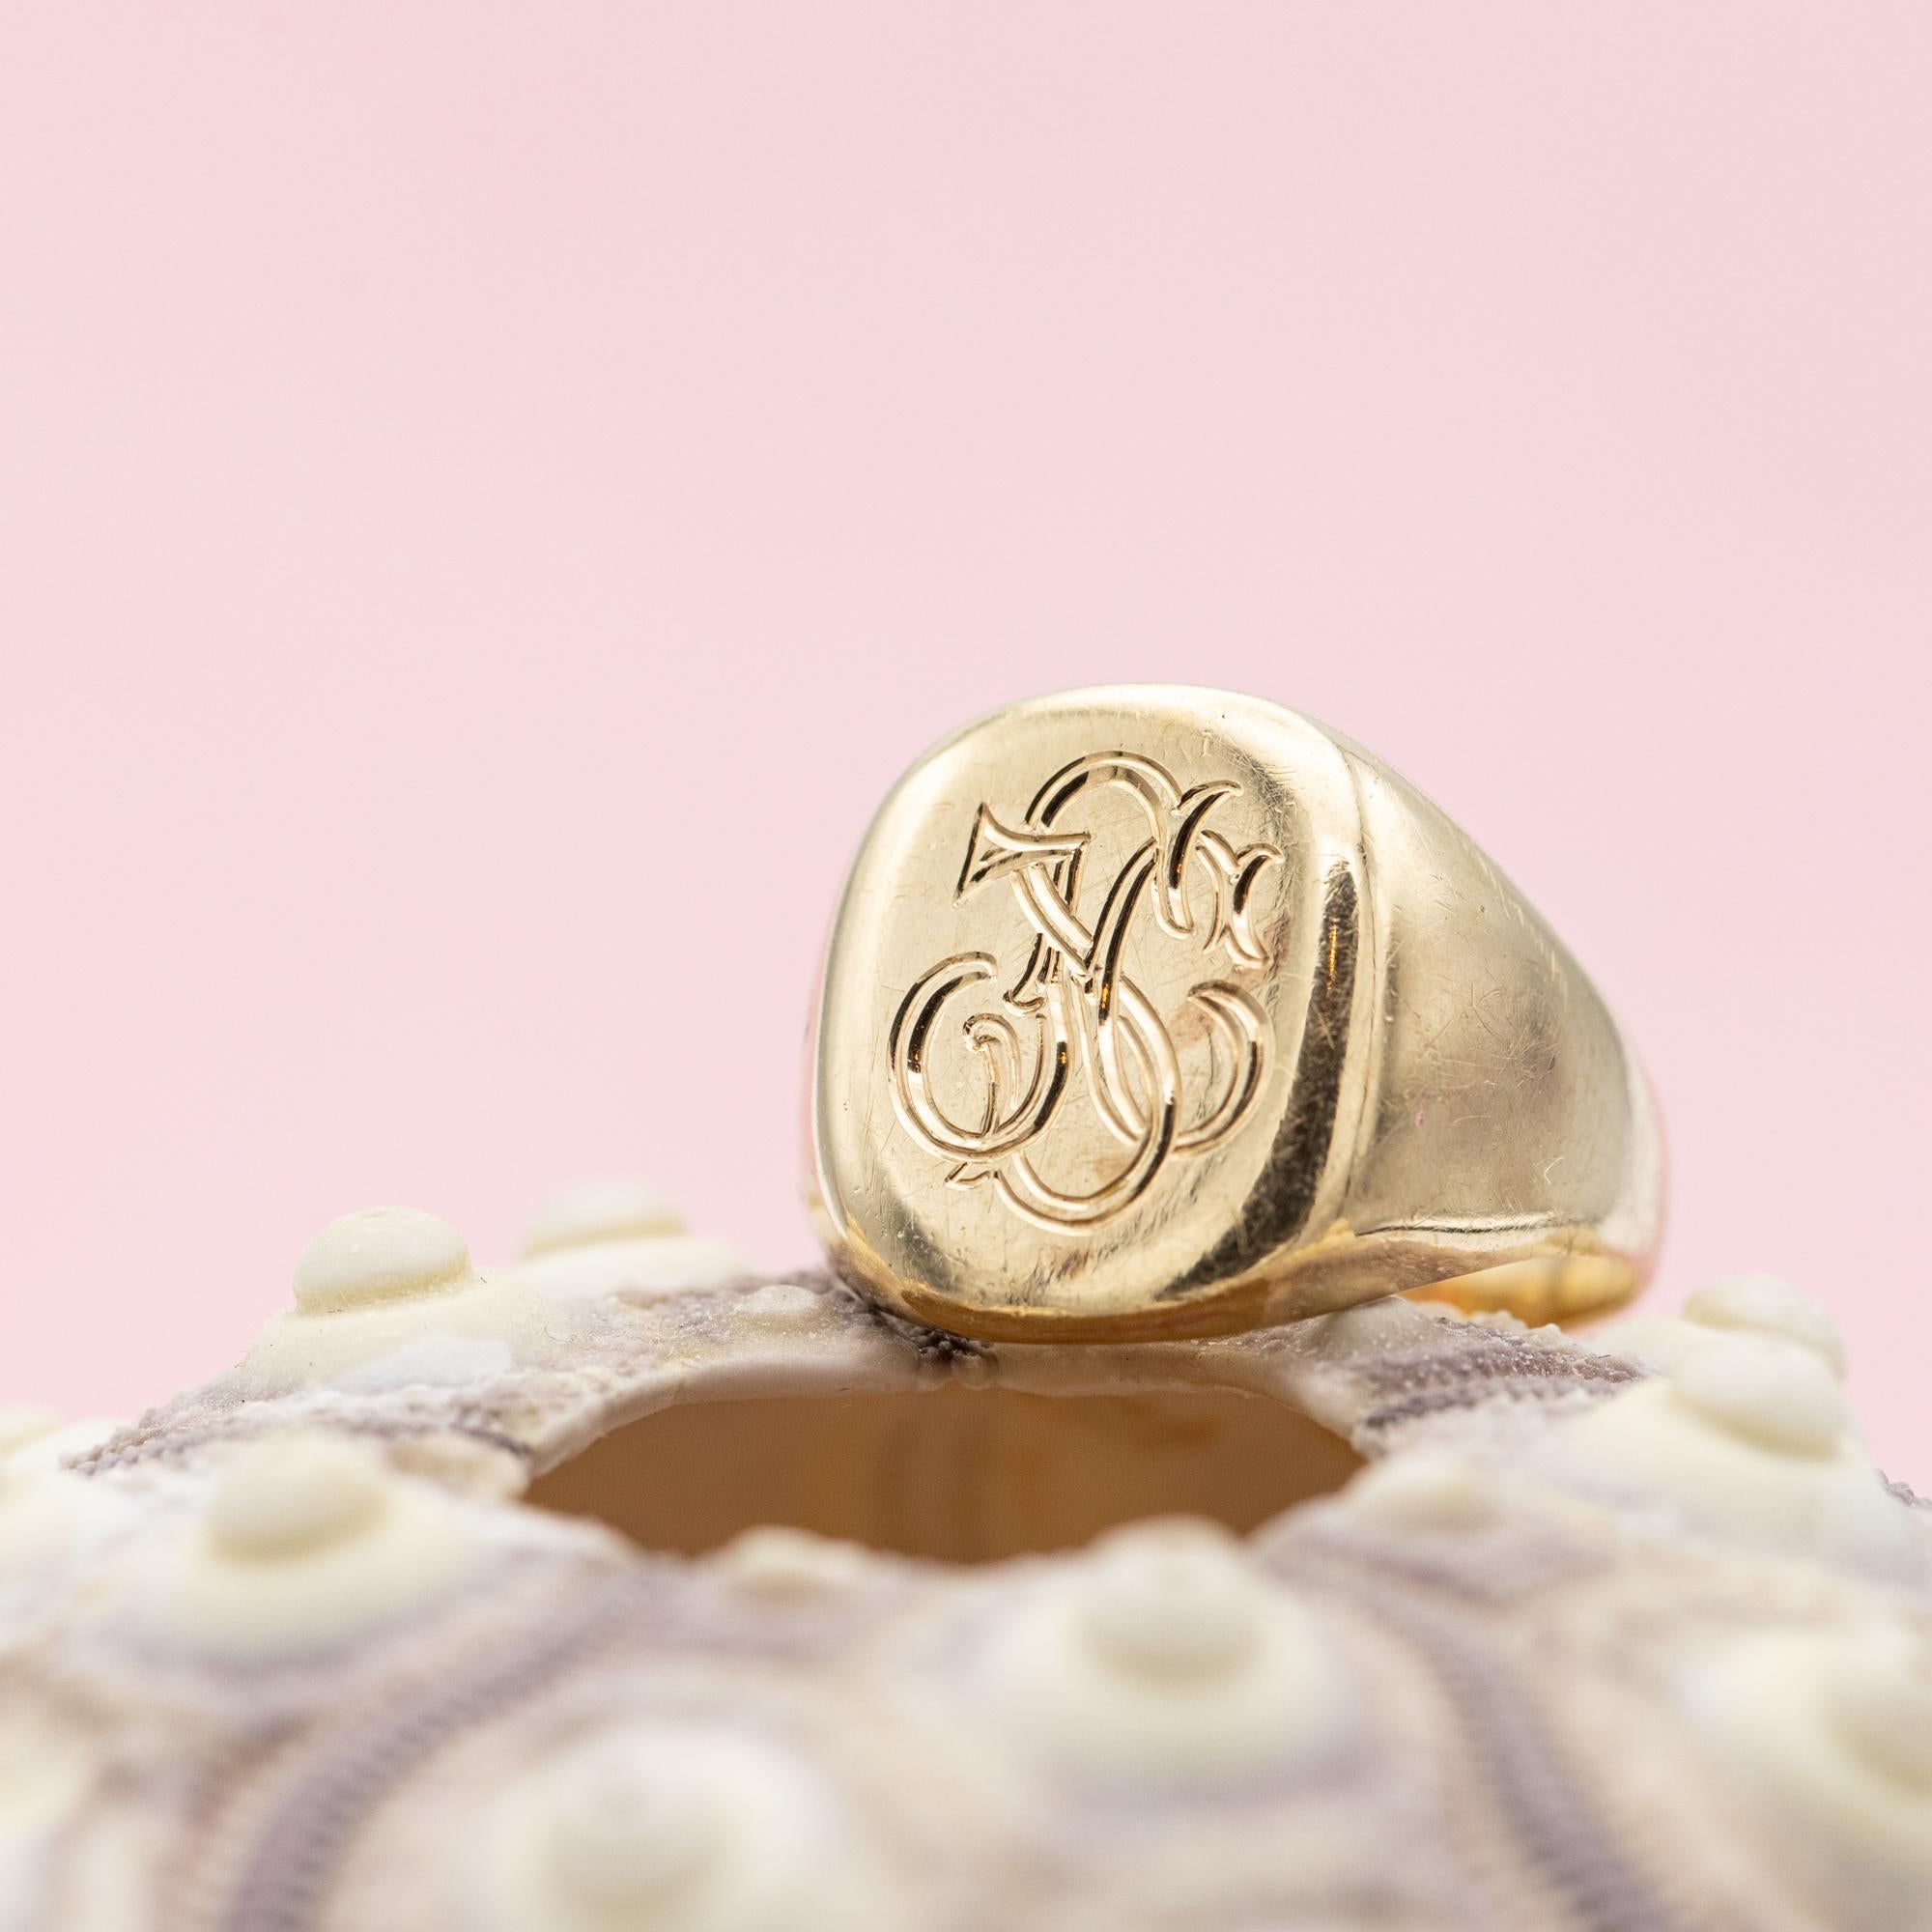 Nous vous proposons cette magnifique chevalière Initials J & S & C. Ce bijou 9 carats est un véritable signe de noblesse et de statut. Il est parfait pour être porté autour du petit doigt, comme il se doit. Ou tout autre doigt que vous préférez,